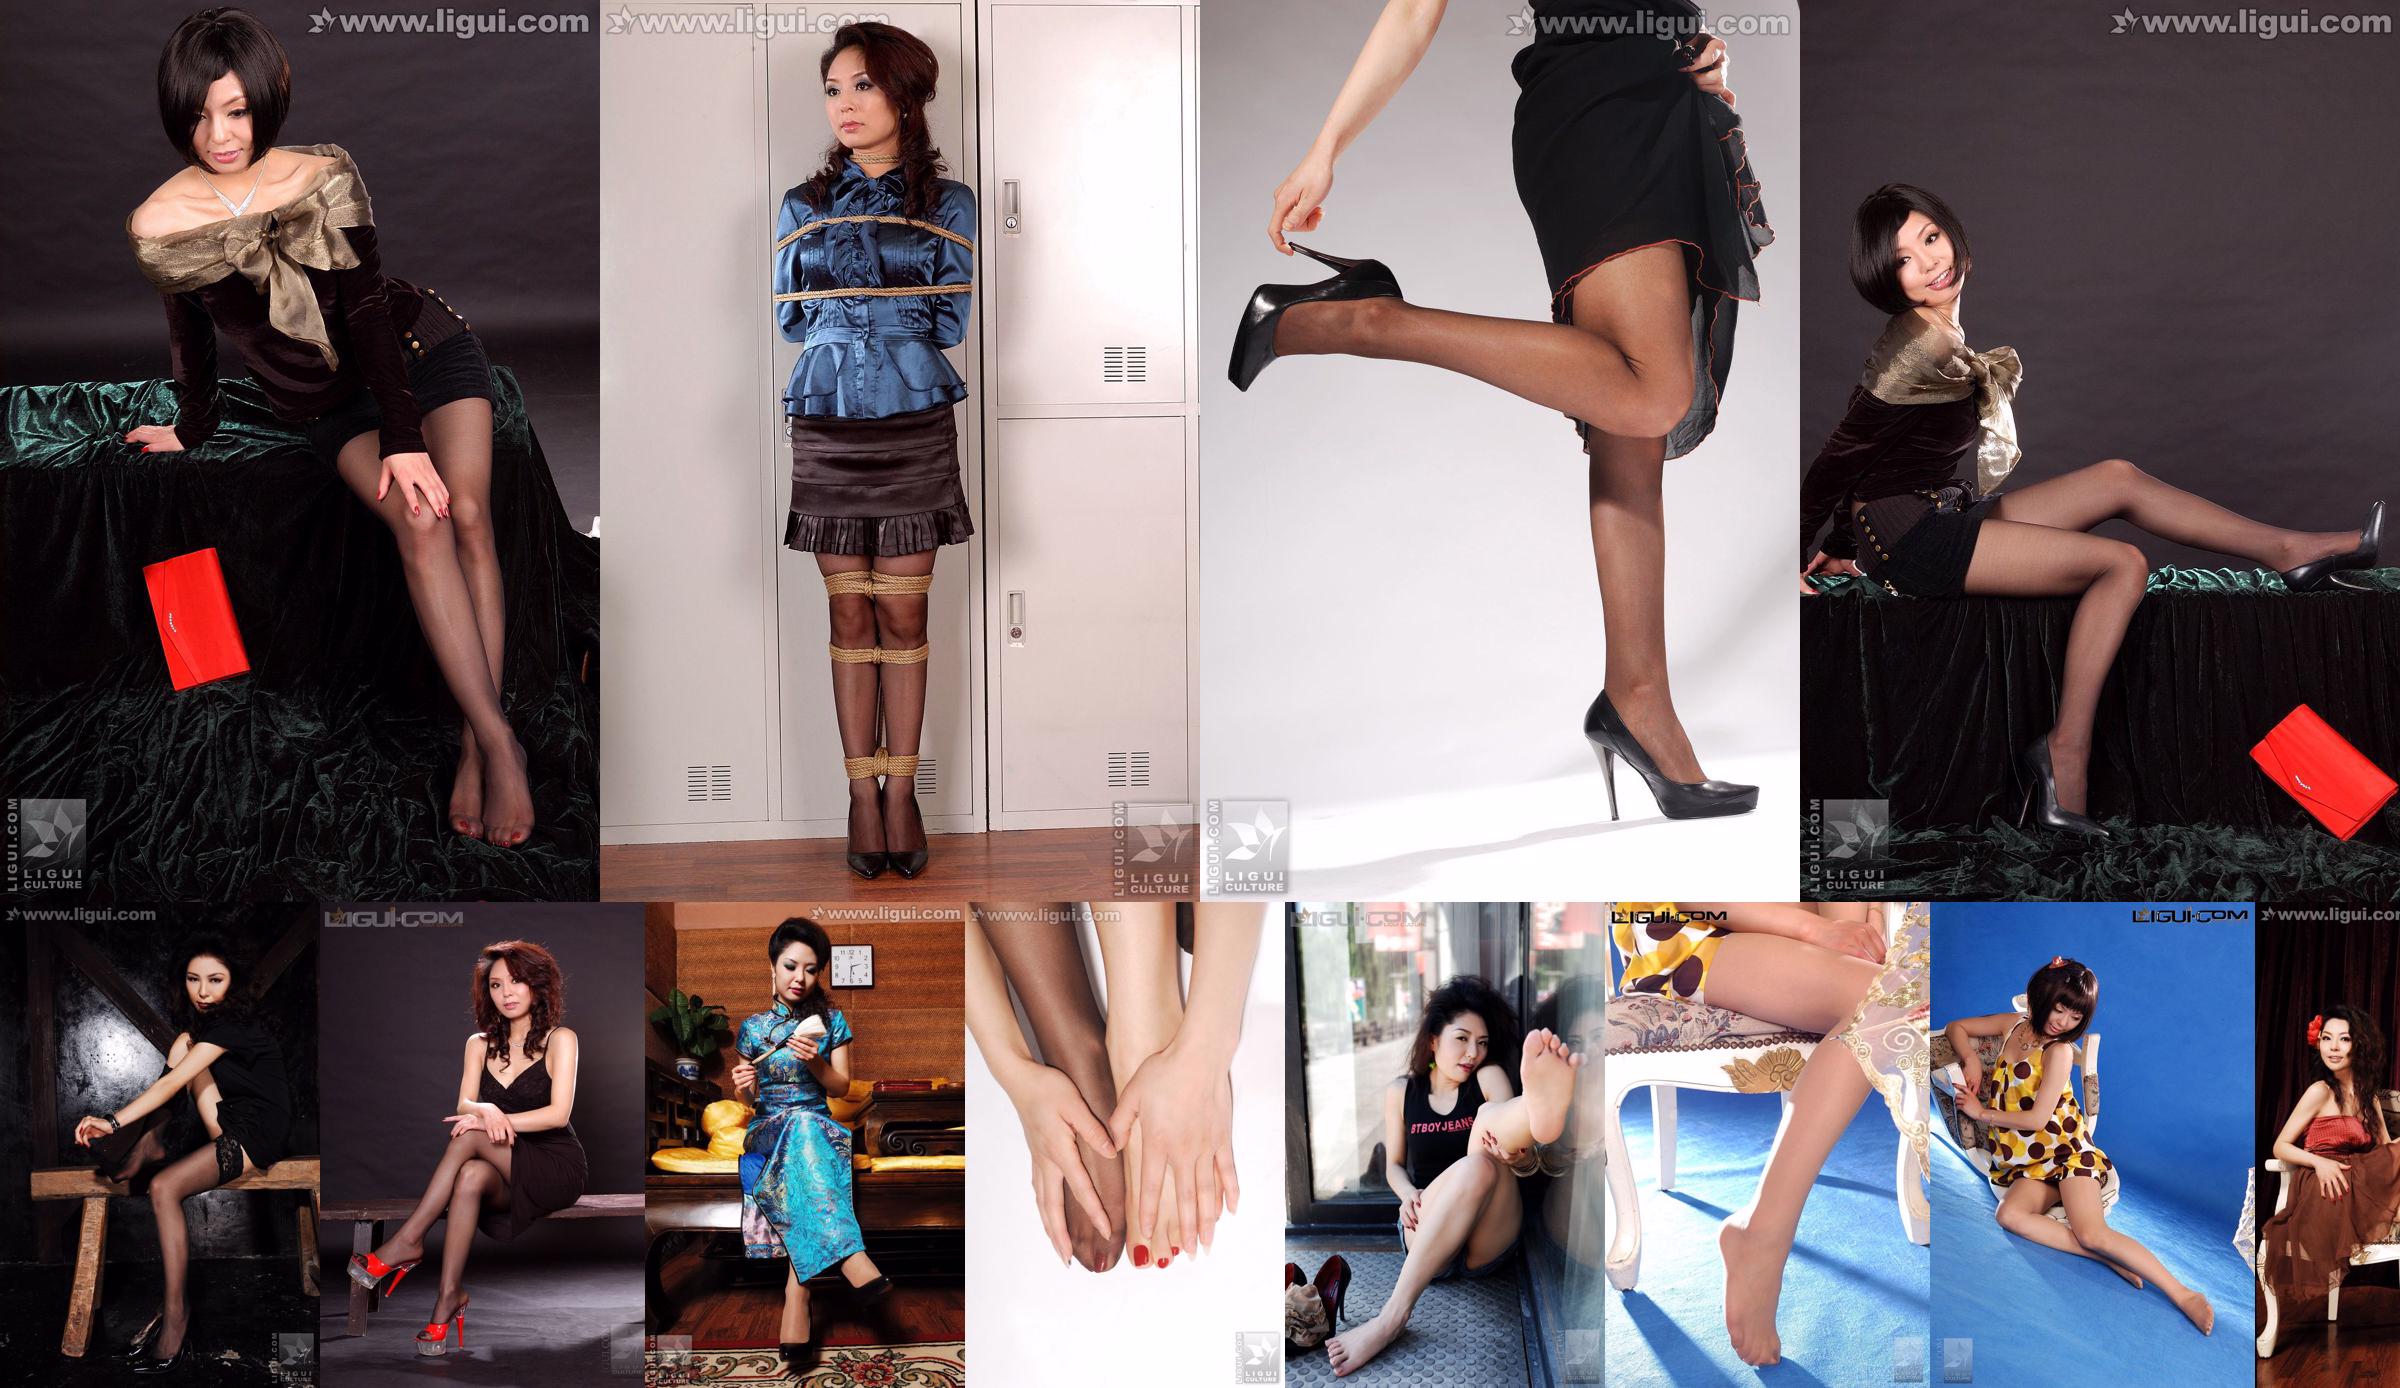 Người mẫu Bingqing "Hương đen Tình yêu của một người phụ nữ trưởng thành xinh đẹp" [丽 柜 LiGui] Bức ảnh chụp Stockings và Yufu No.1a63d9 Trang 1